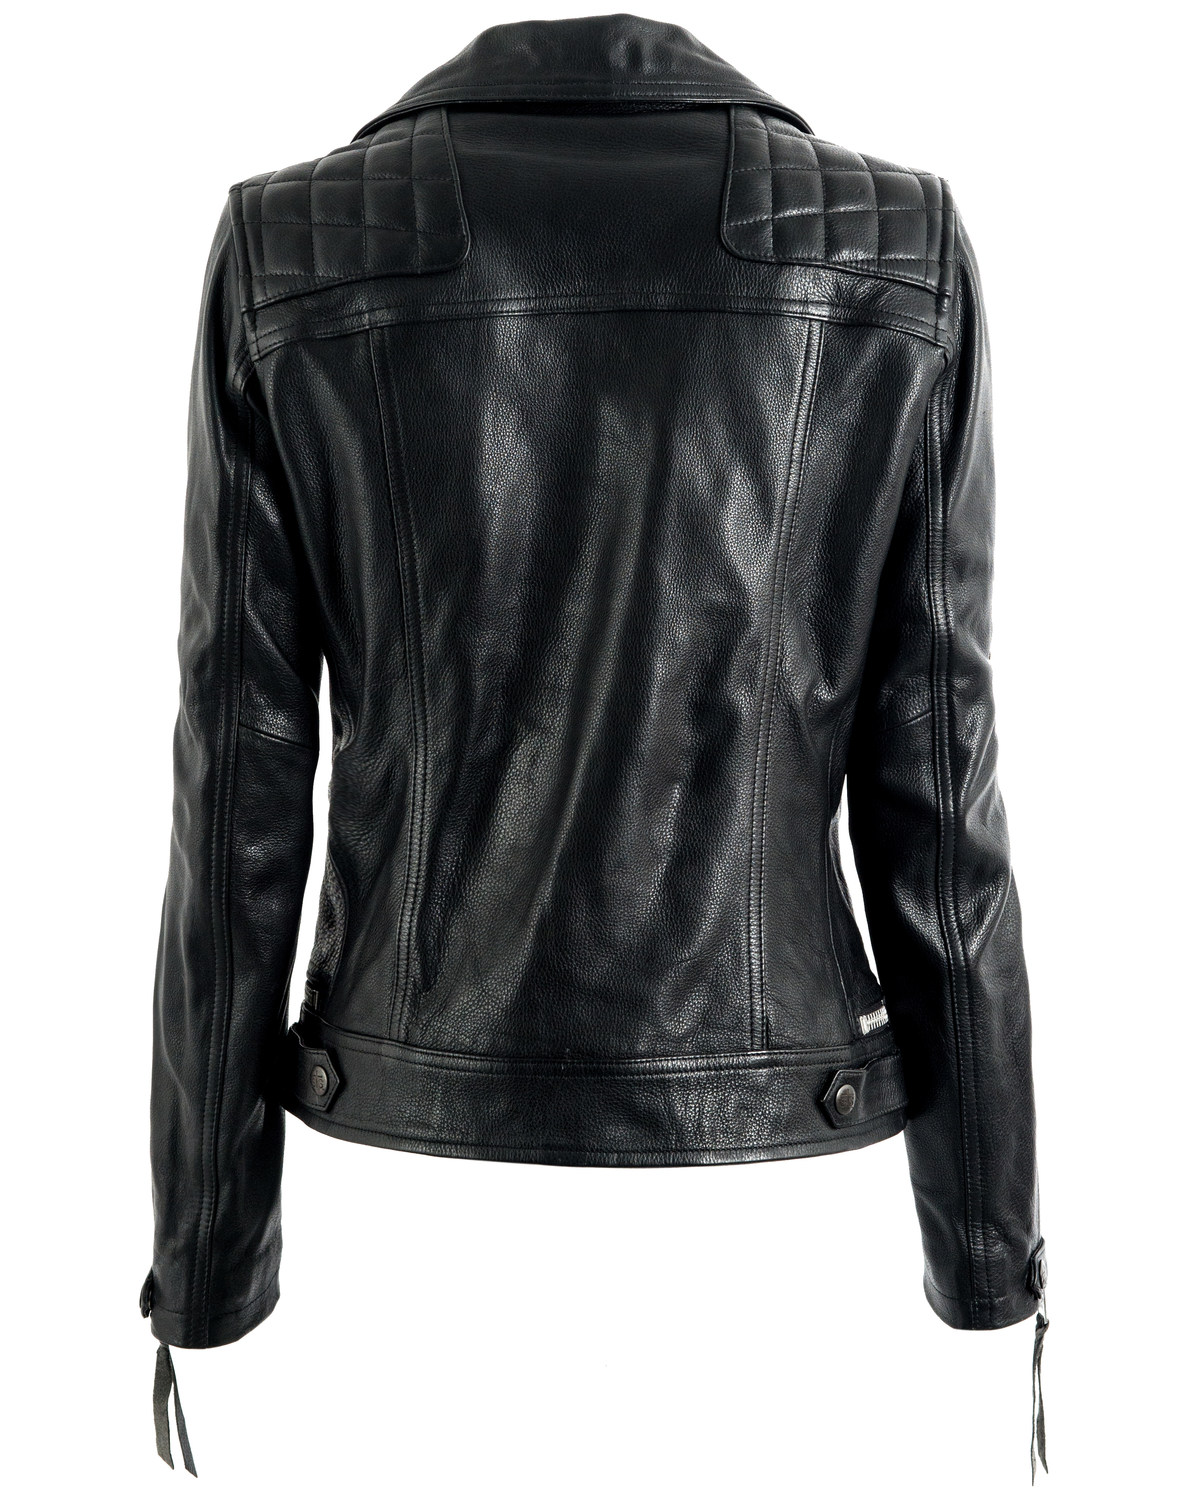 STS Ranchwear Women's Black Dreamer Moto Leather Jacket - Plus | Boot Barn